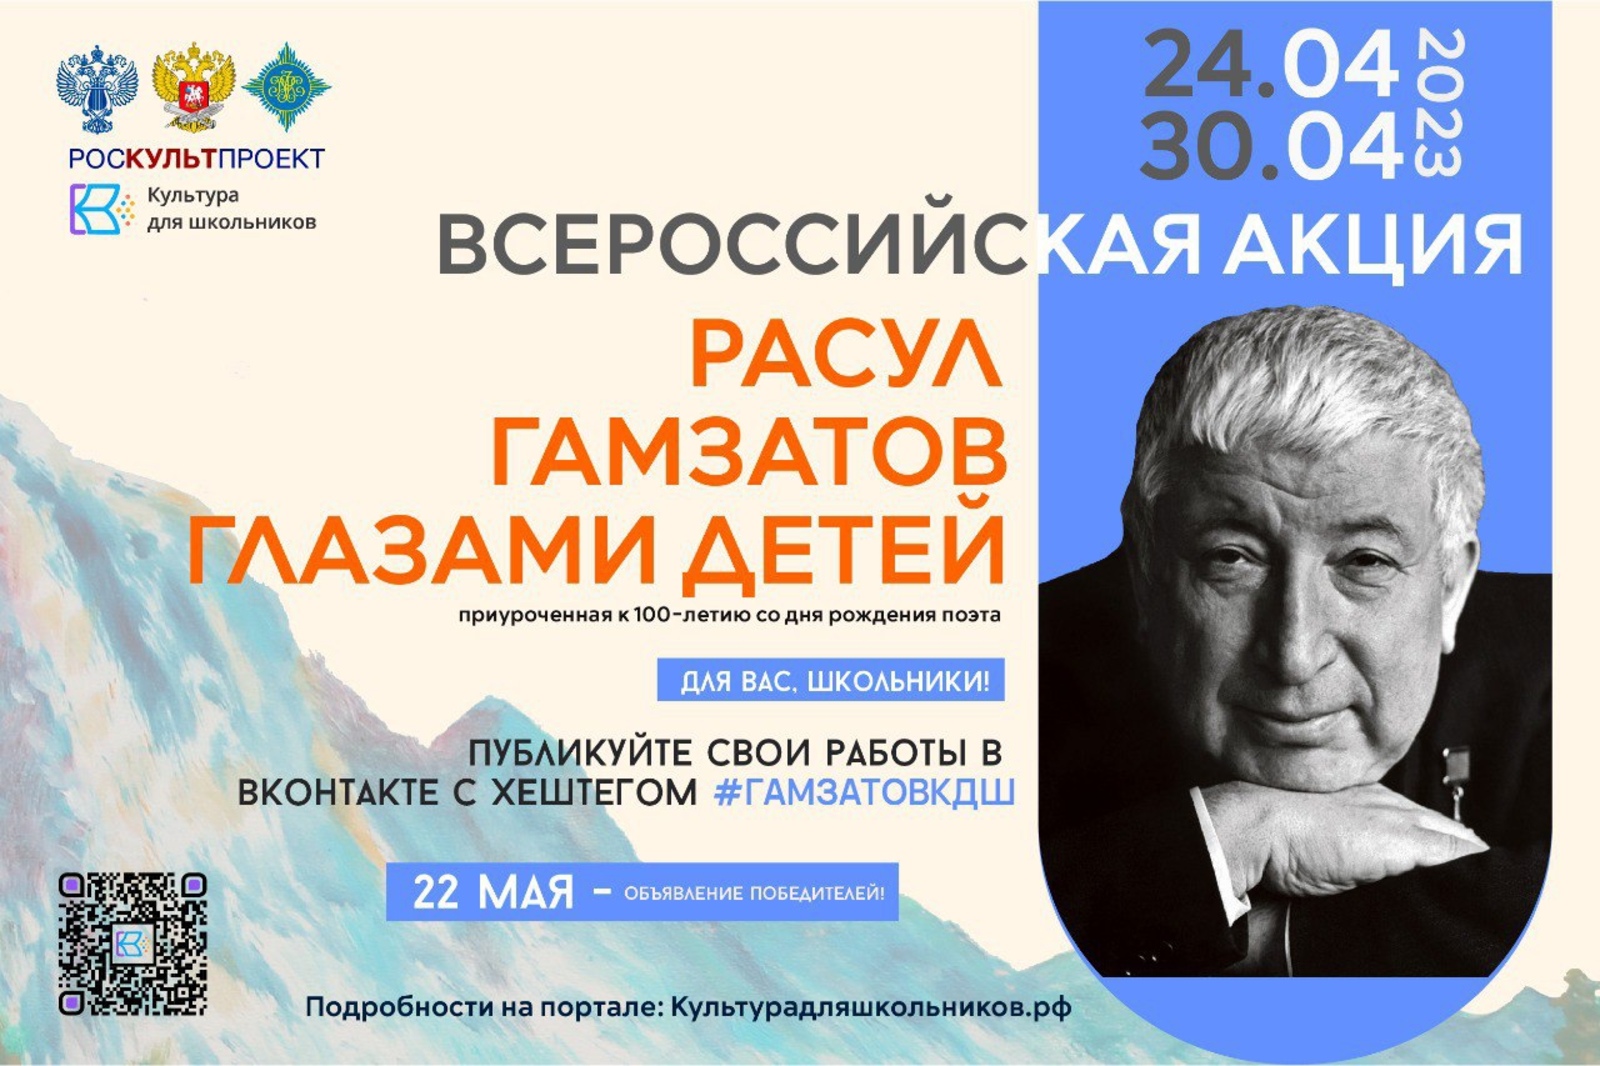 Башкирия присоединится к акции в честь Расула Гамзатова